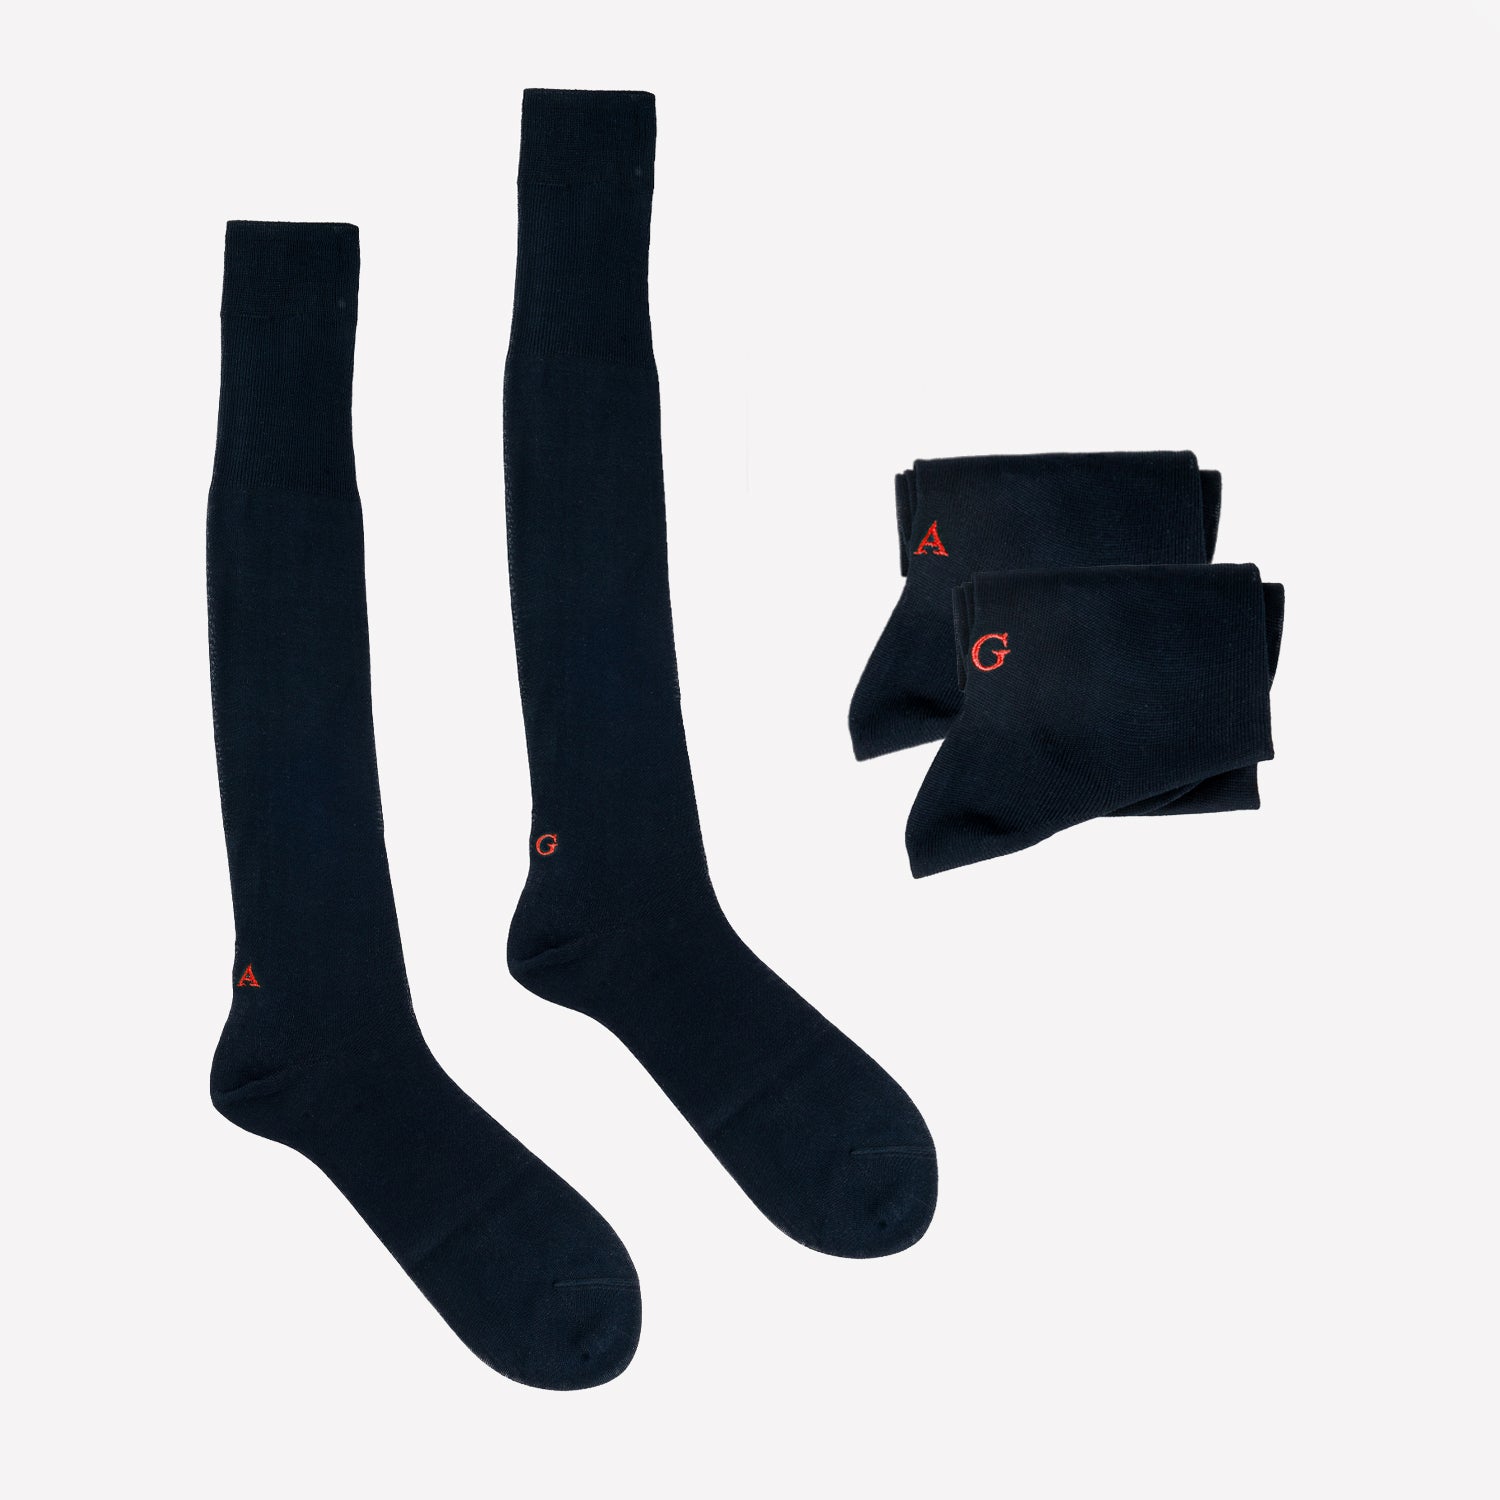 Blue Men's Socks with Red Initials - 100% Cotton Filo di scozia - Size 40/42 - 140